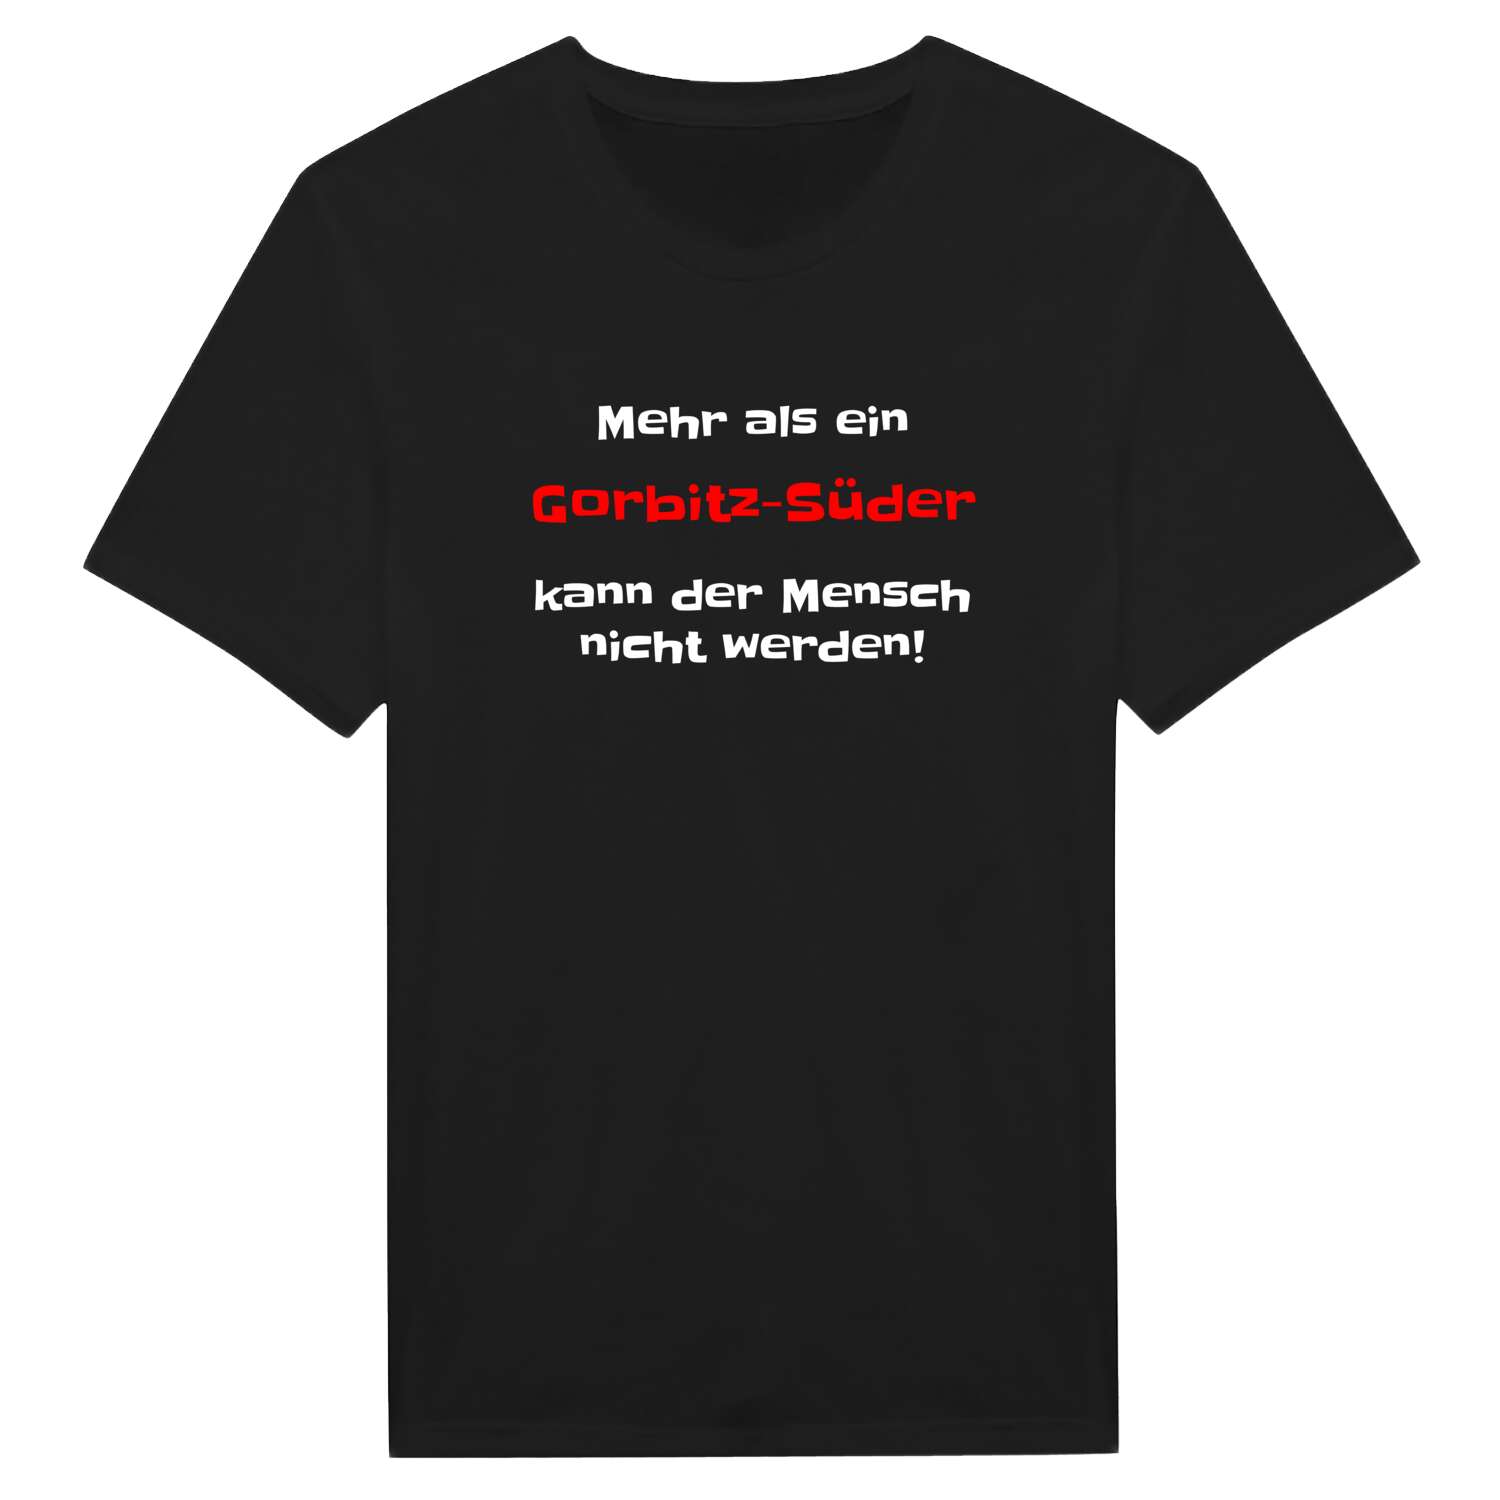 Gorbitz-Süd T-Shirt »Mehr als ein«